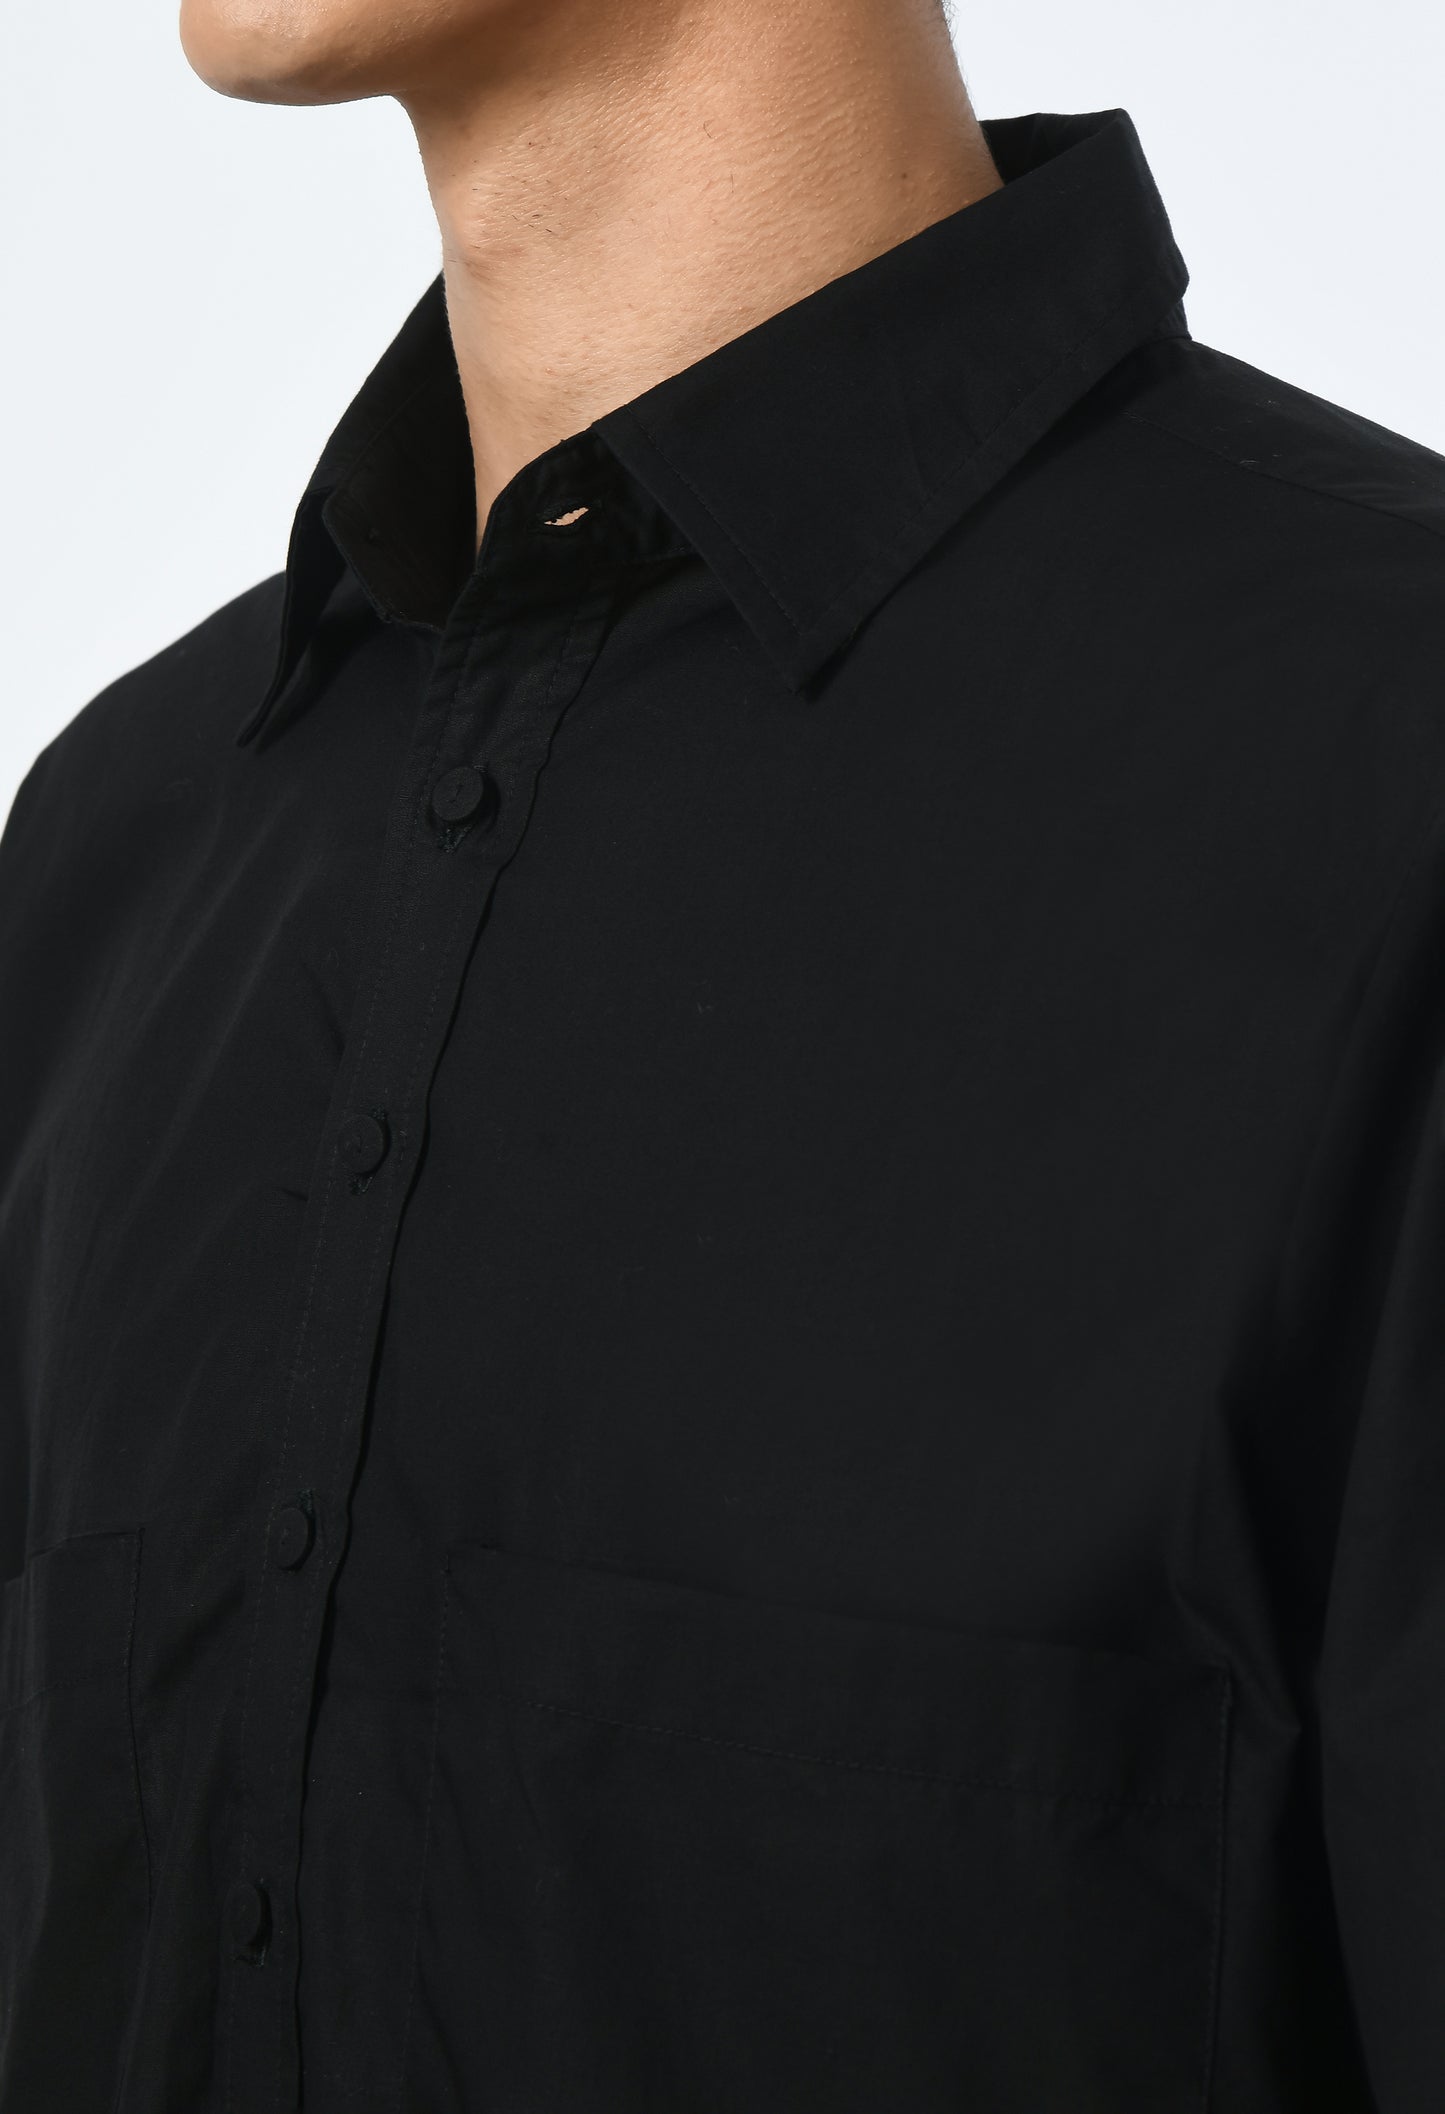 Black cotton unisex high-low cut shirt.